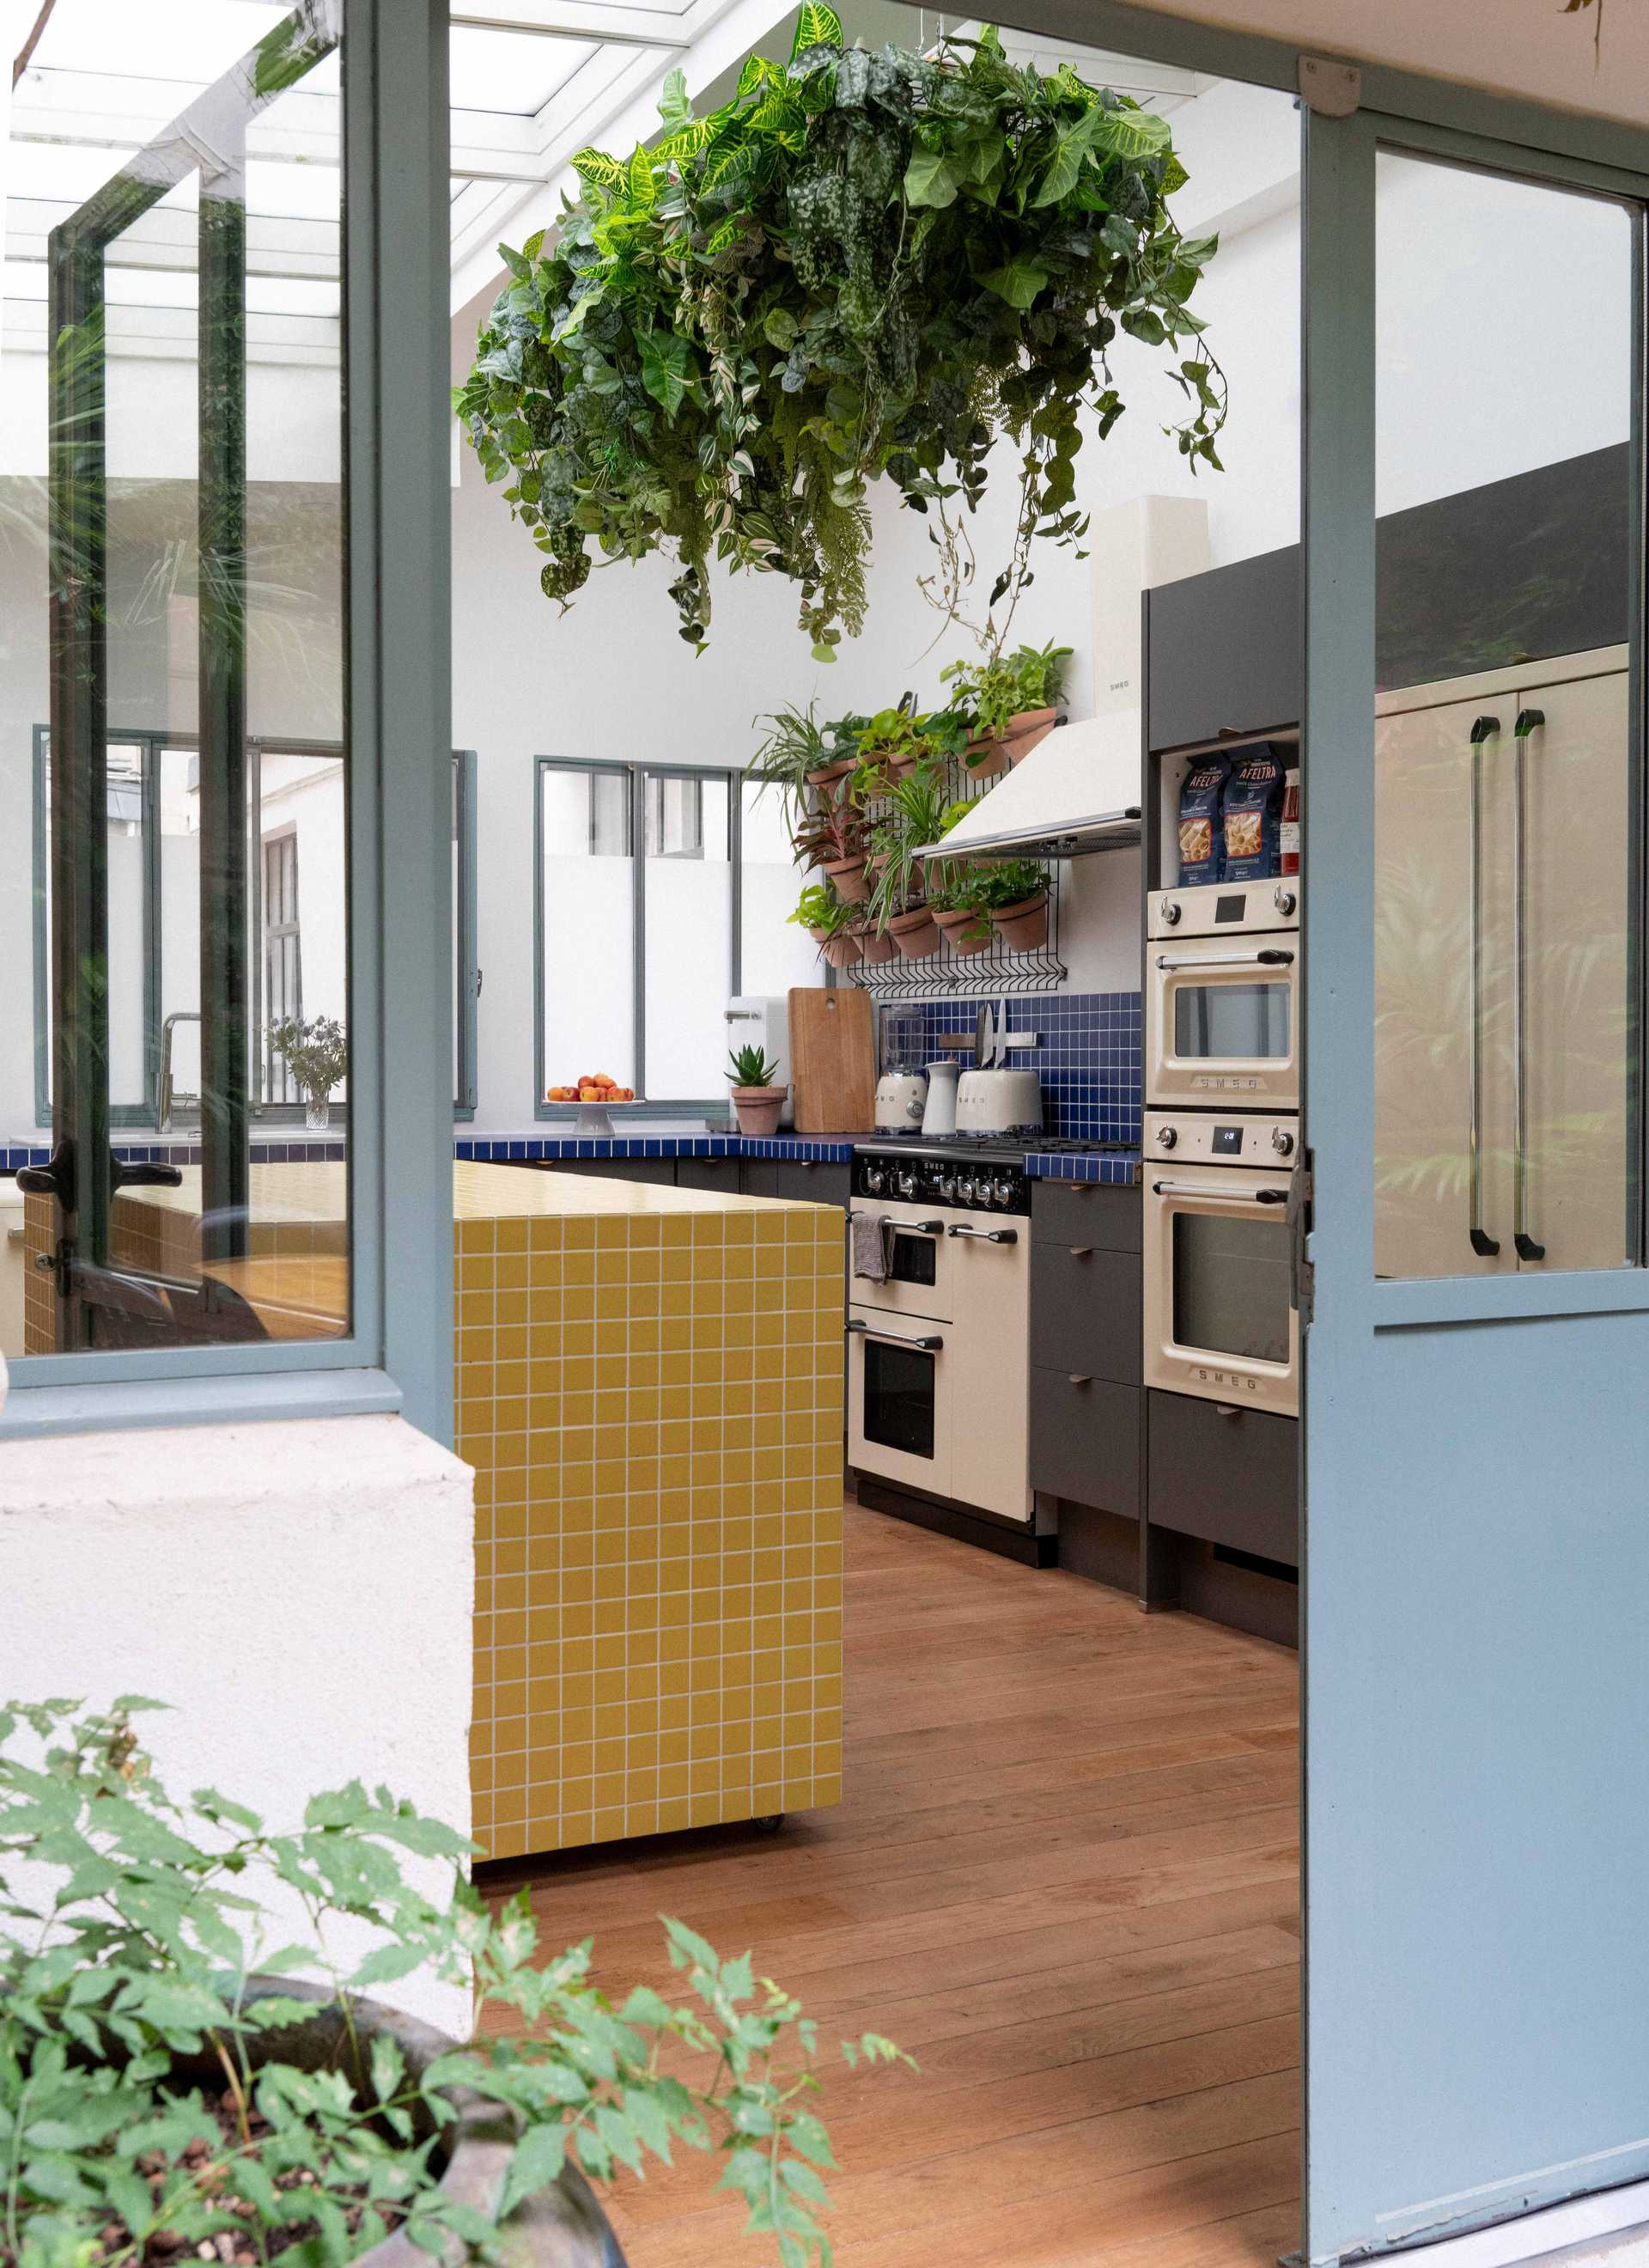 Kitchen designed by an interior designer in Marseille